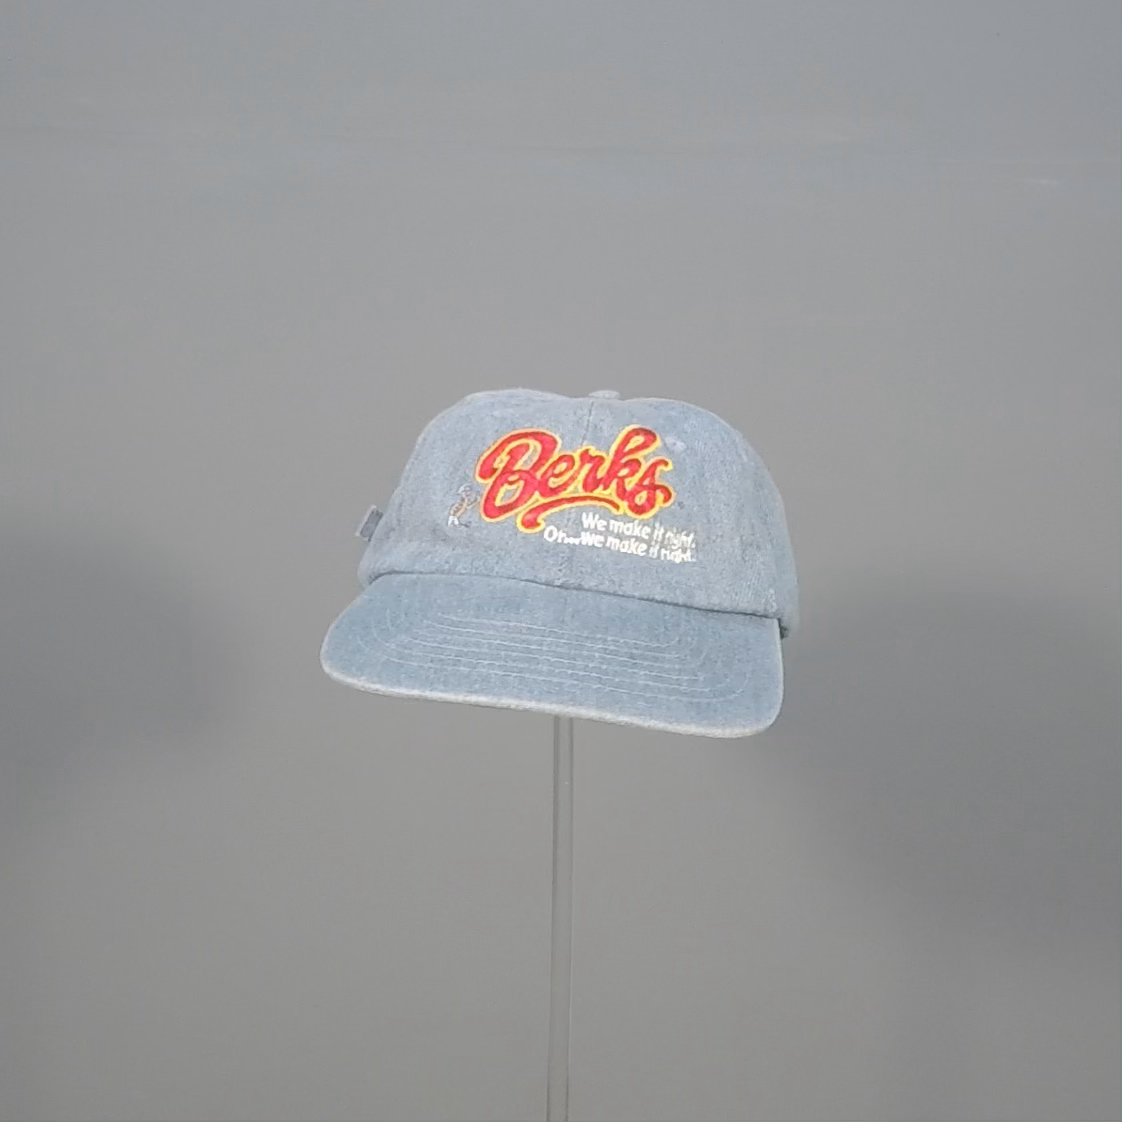 Berks Embroidered Denim Hat